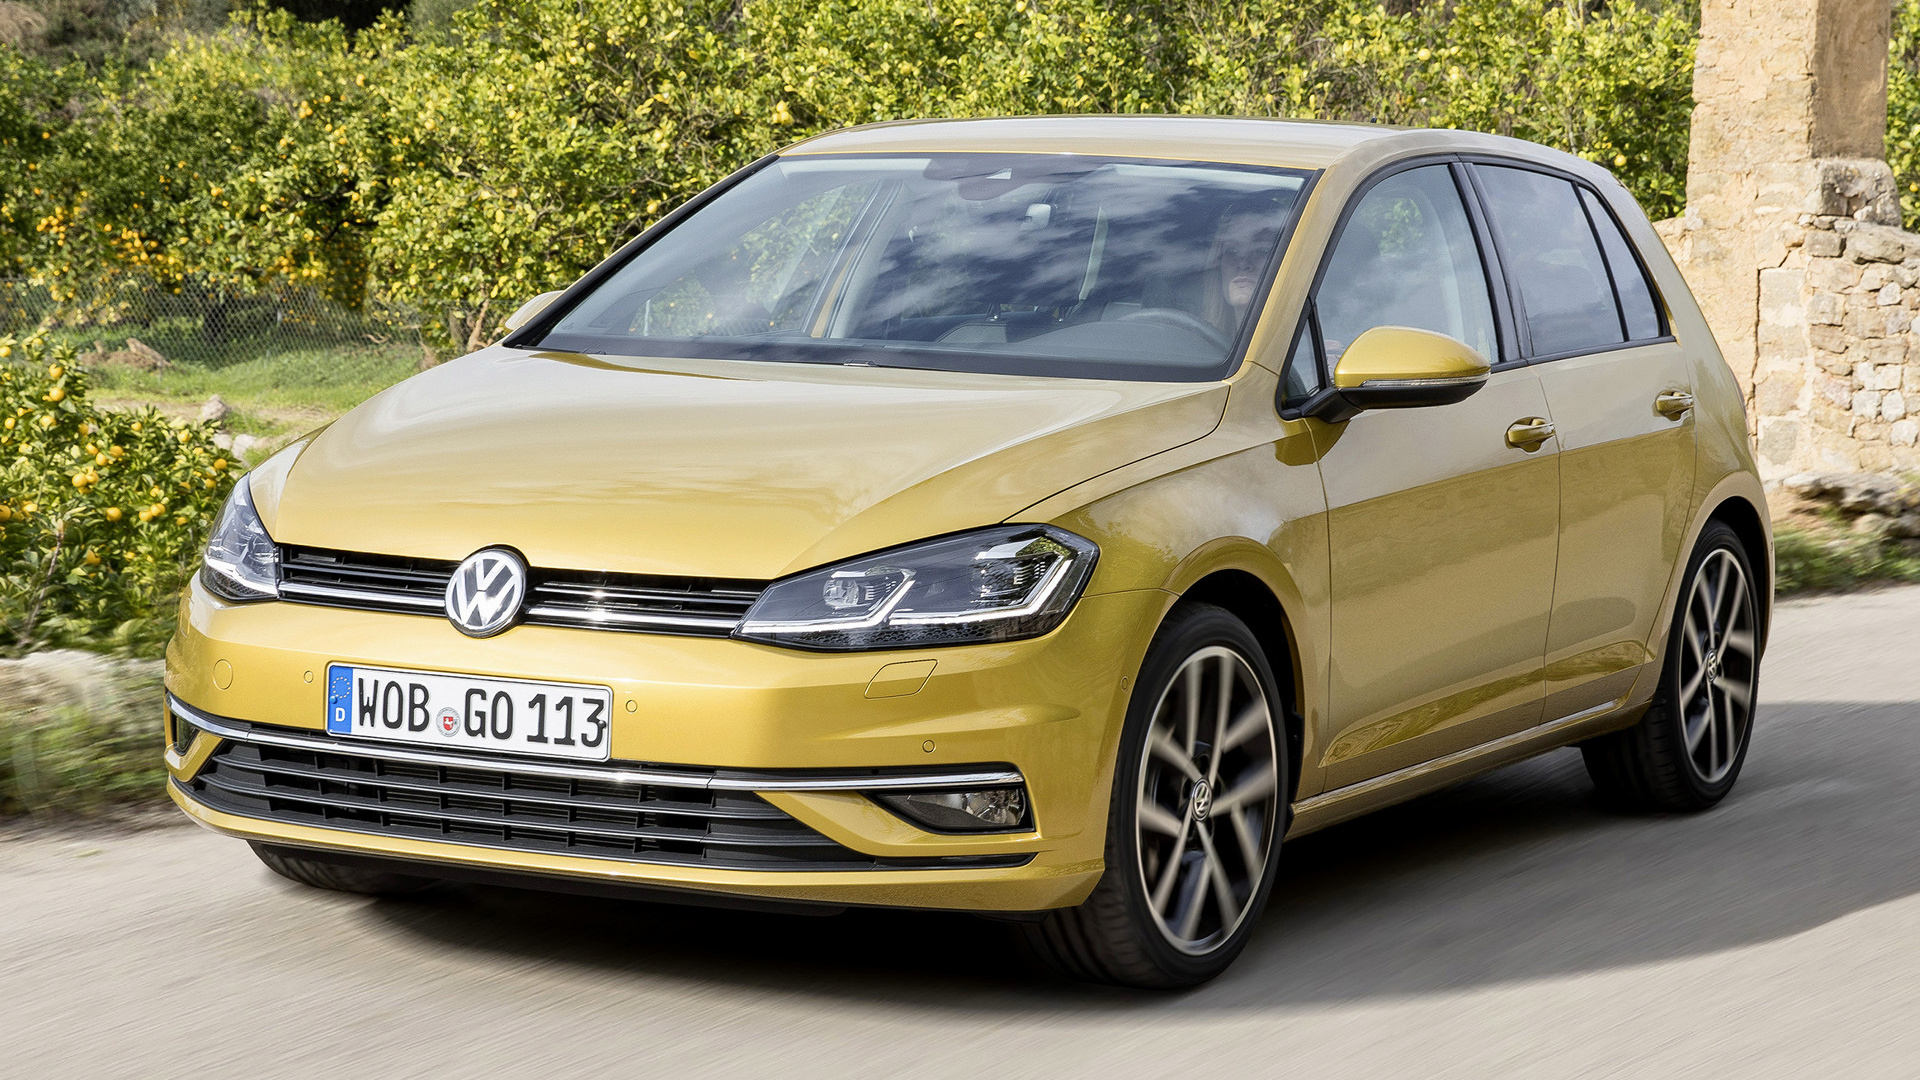 2017 Volkswagen Golf 5door Wallpapers and HD Images